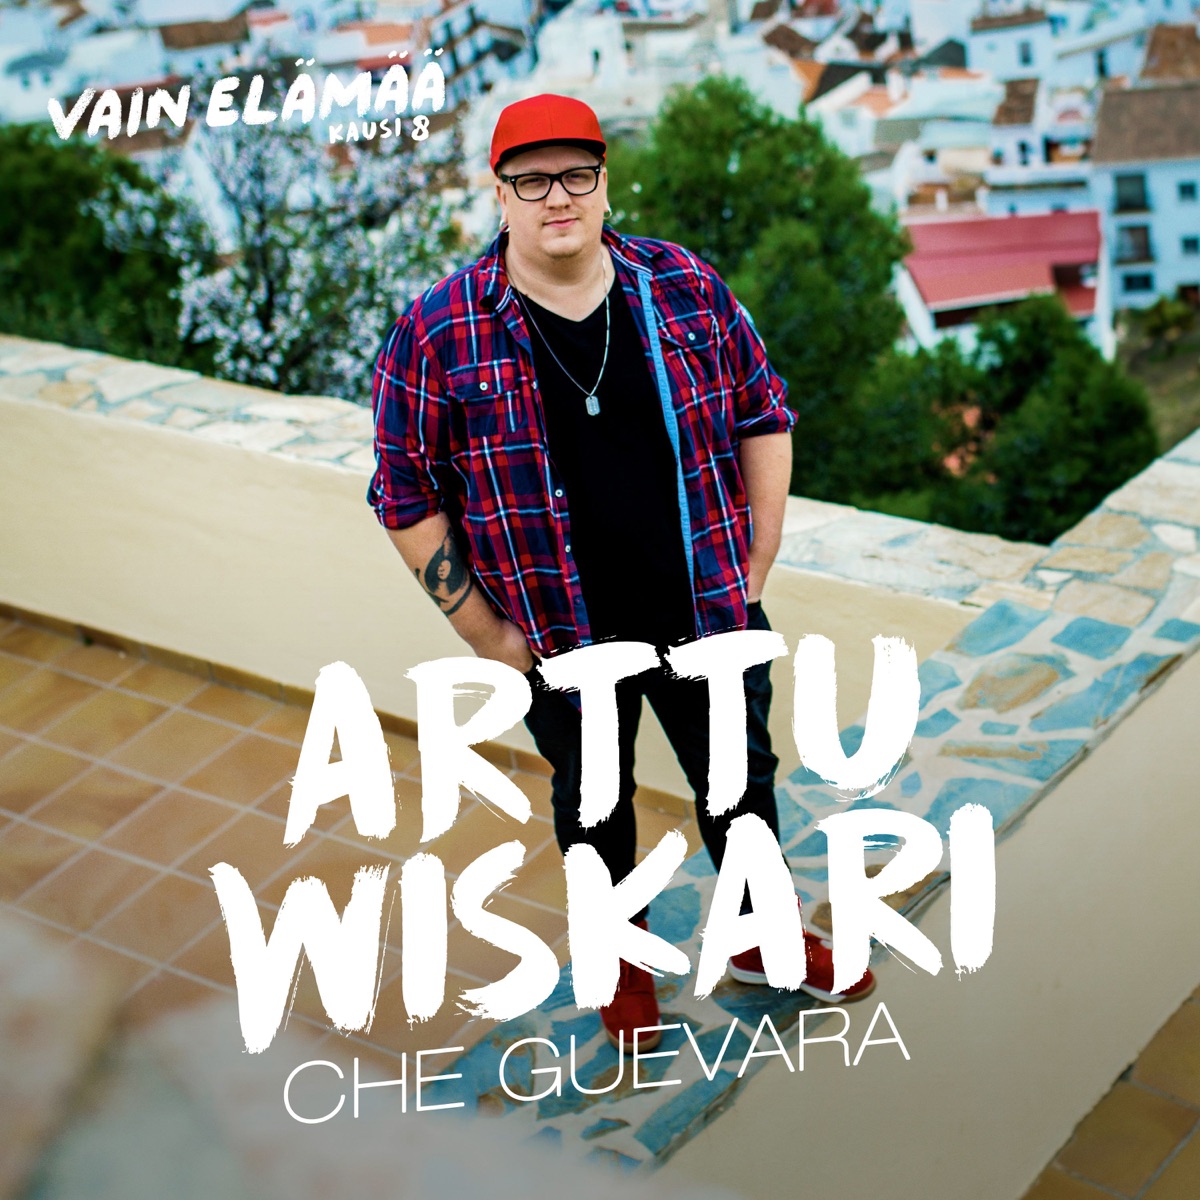 Suomen muotoisen pilven alla by Arttu Wiskari on Apple Music